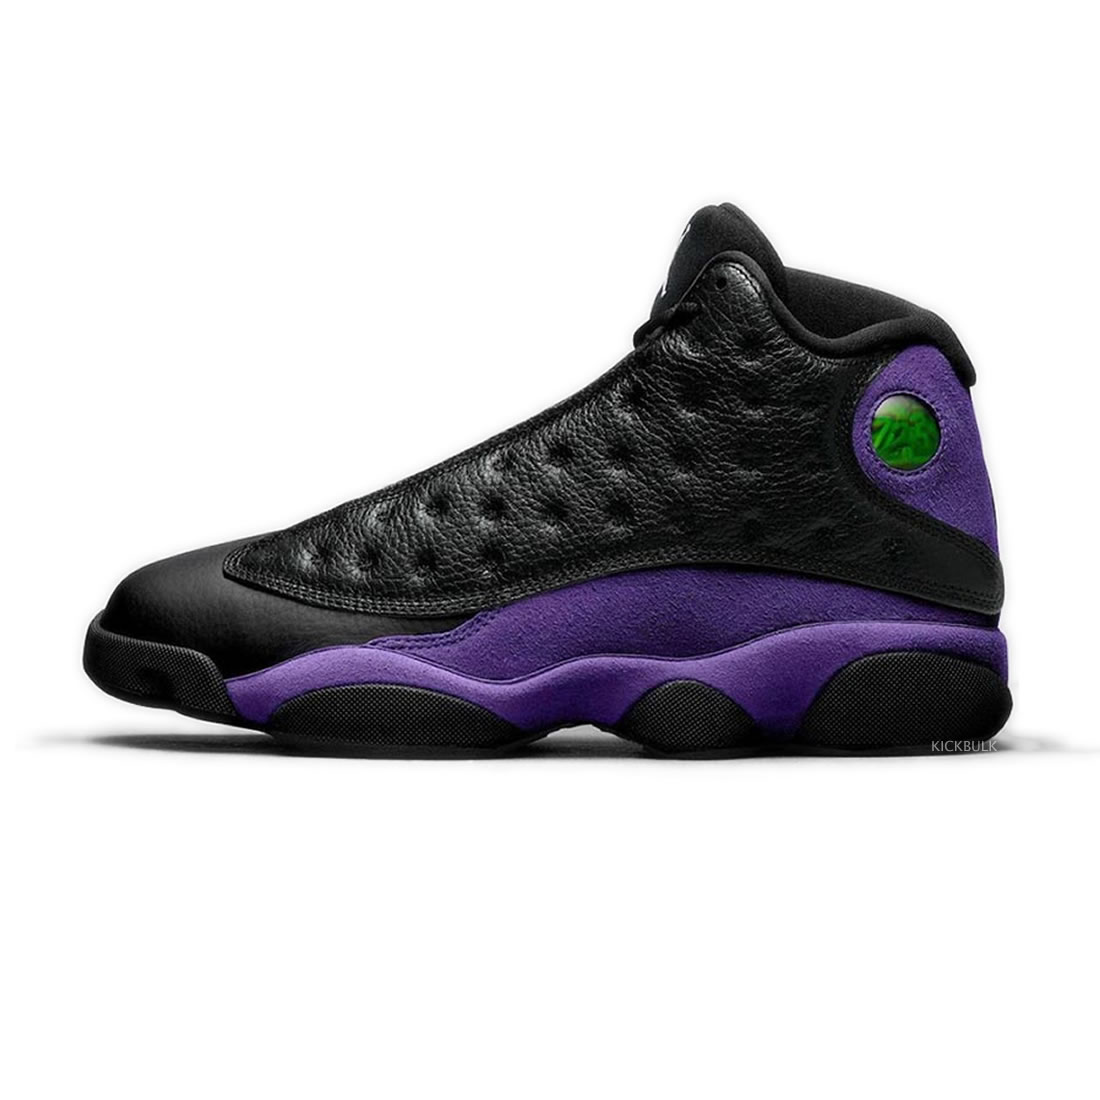 Nike Air Jordan 13 Court Purple Dj5982 015 1 - www.kickbulk.cc